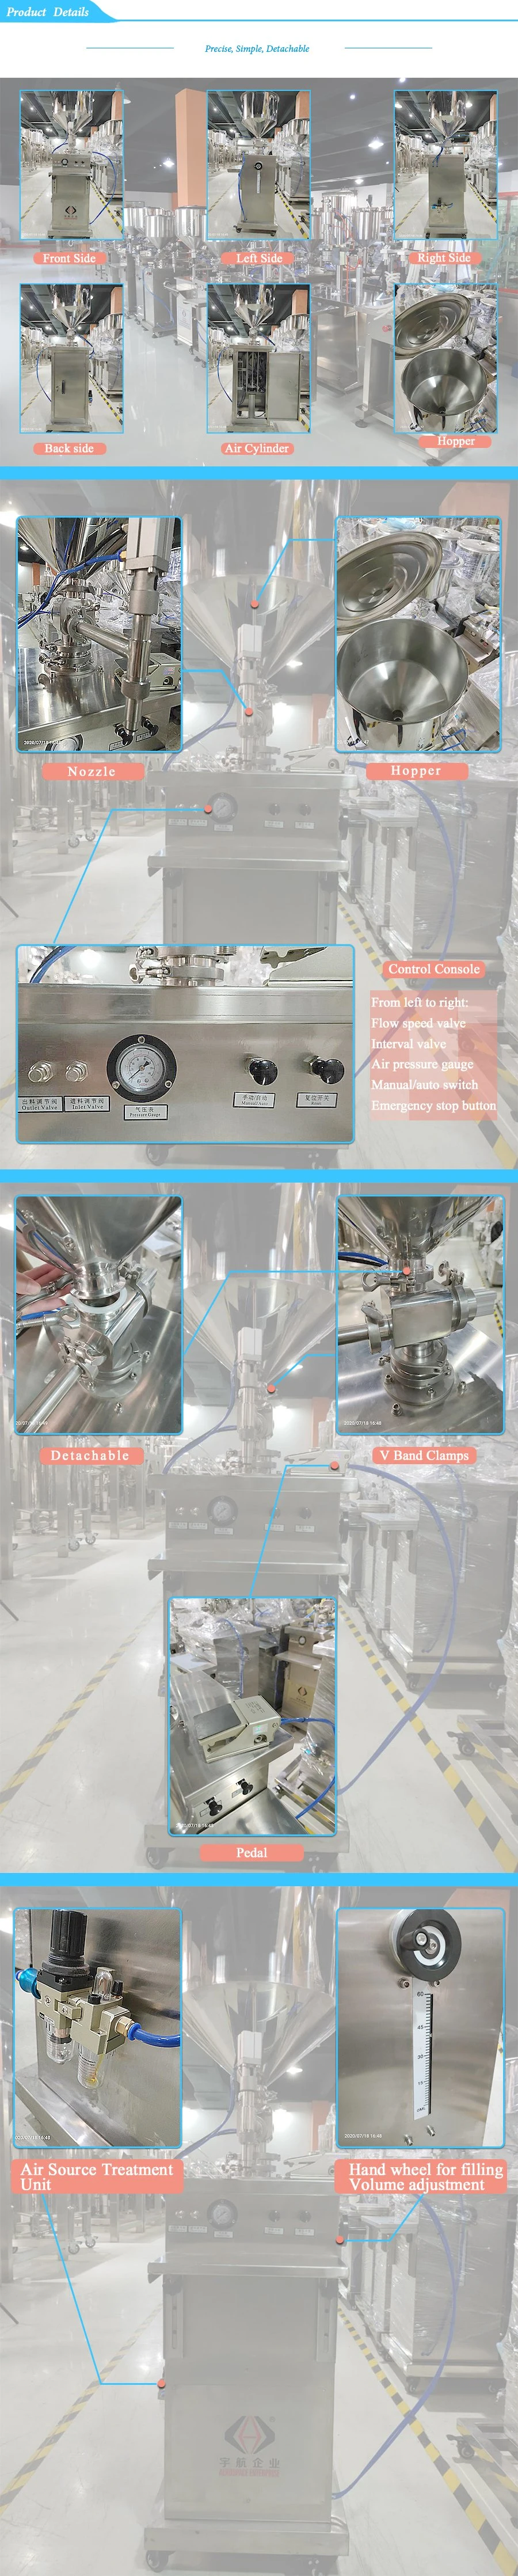 Semi-Auto Manual Cream/Hand Washing Liquid/ Disinfectant Liquid Alcohol Filling Machine